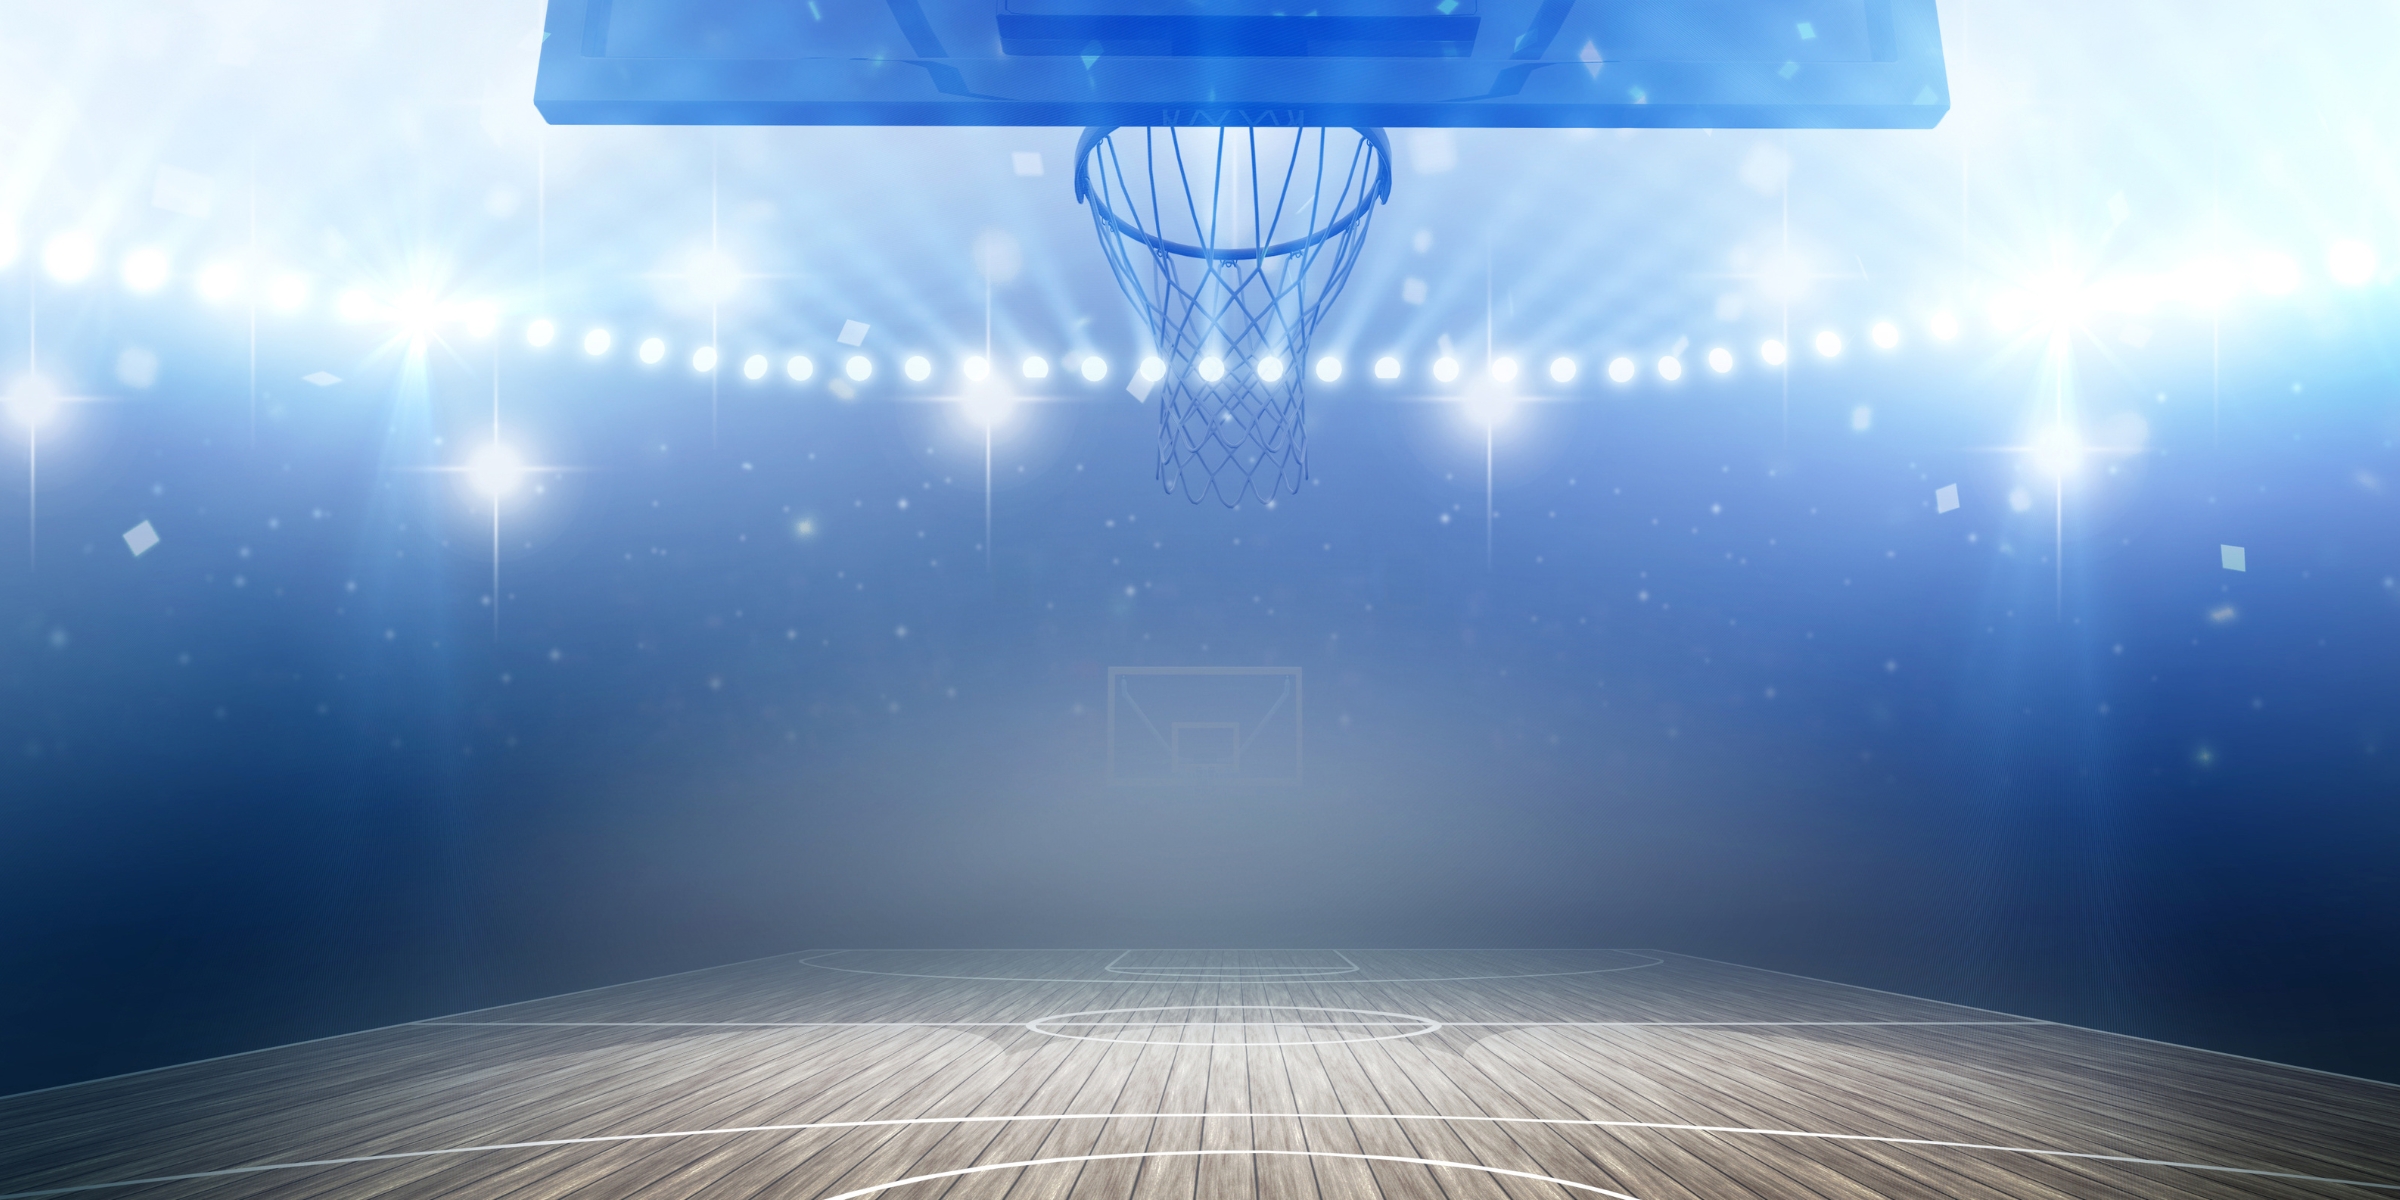 blue spotlights behind the net of an empty basketball court